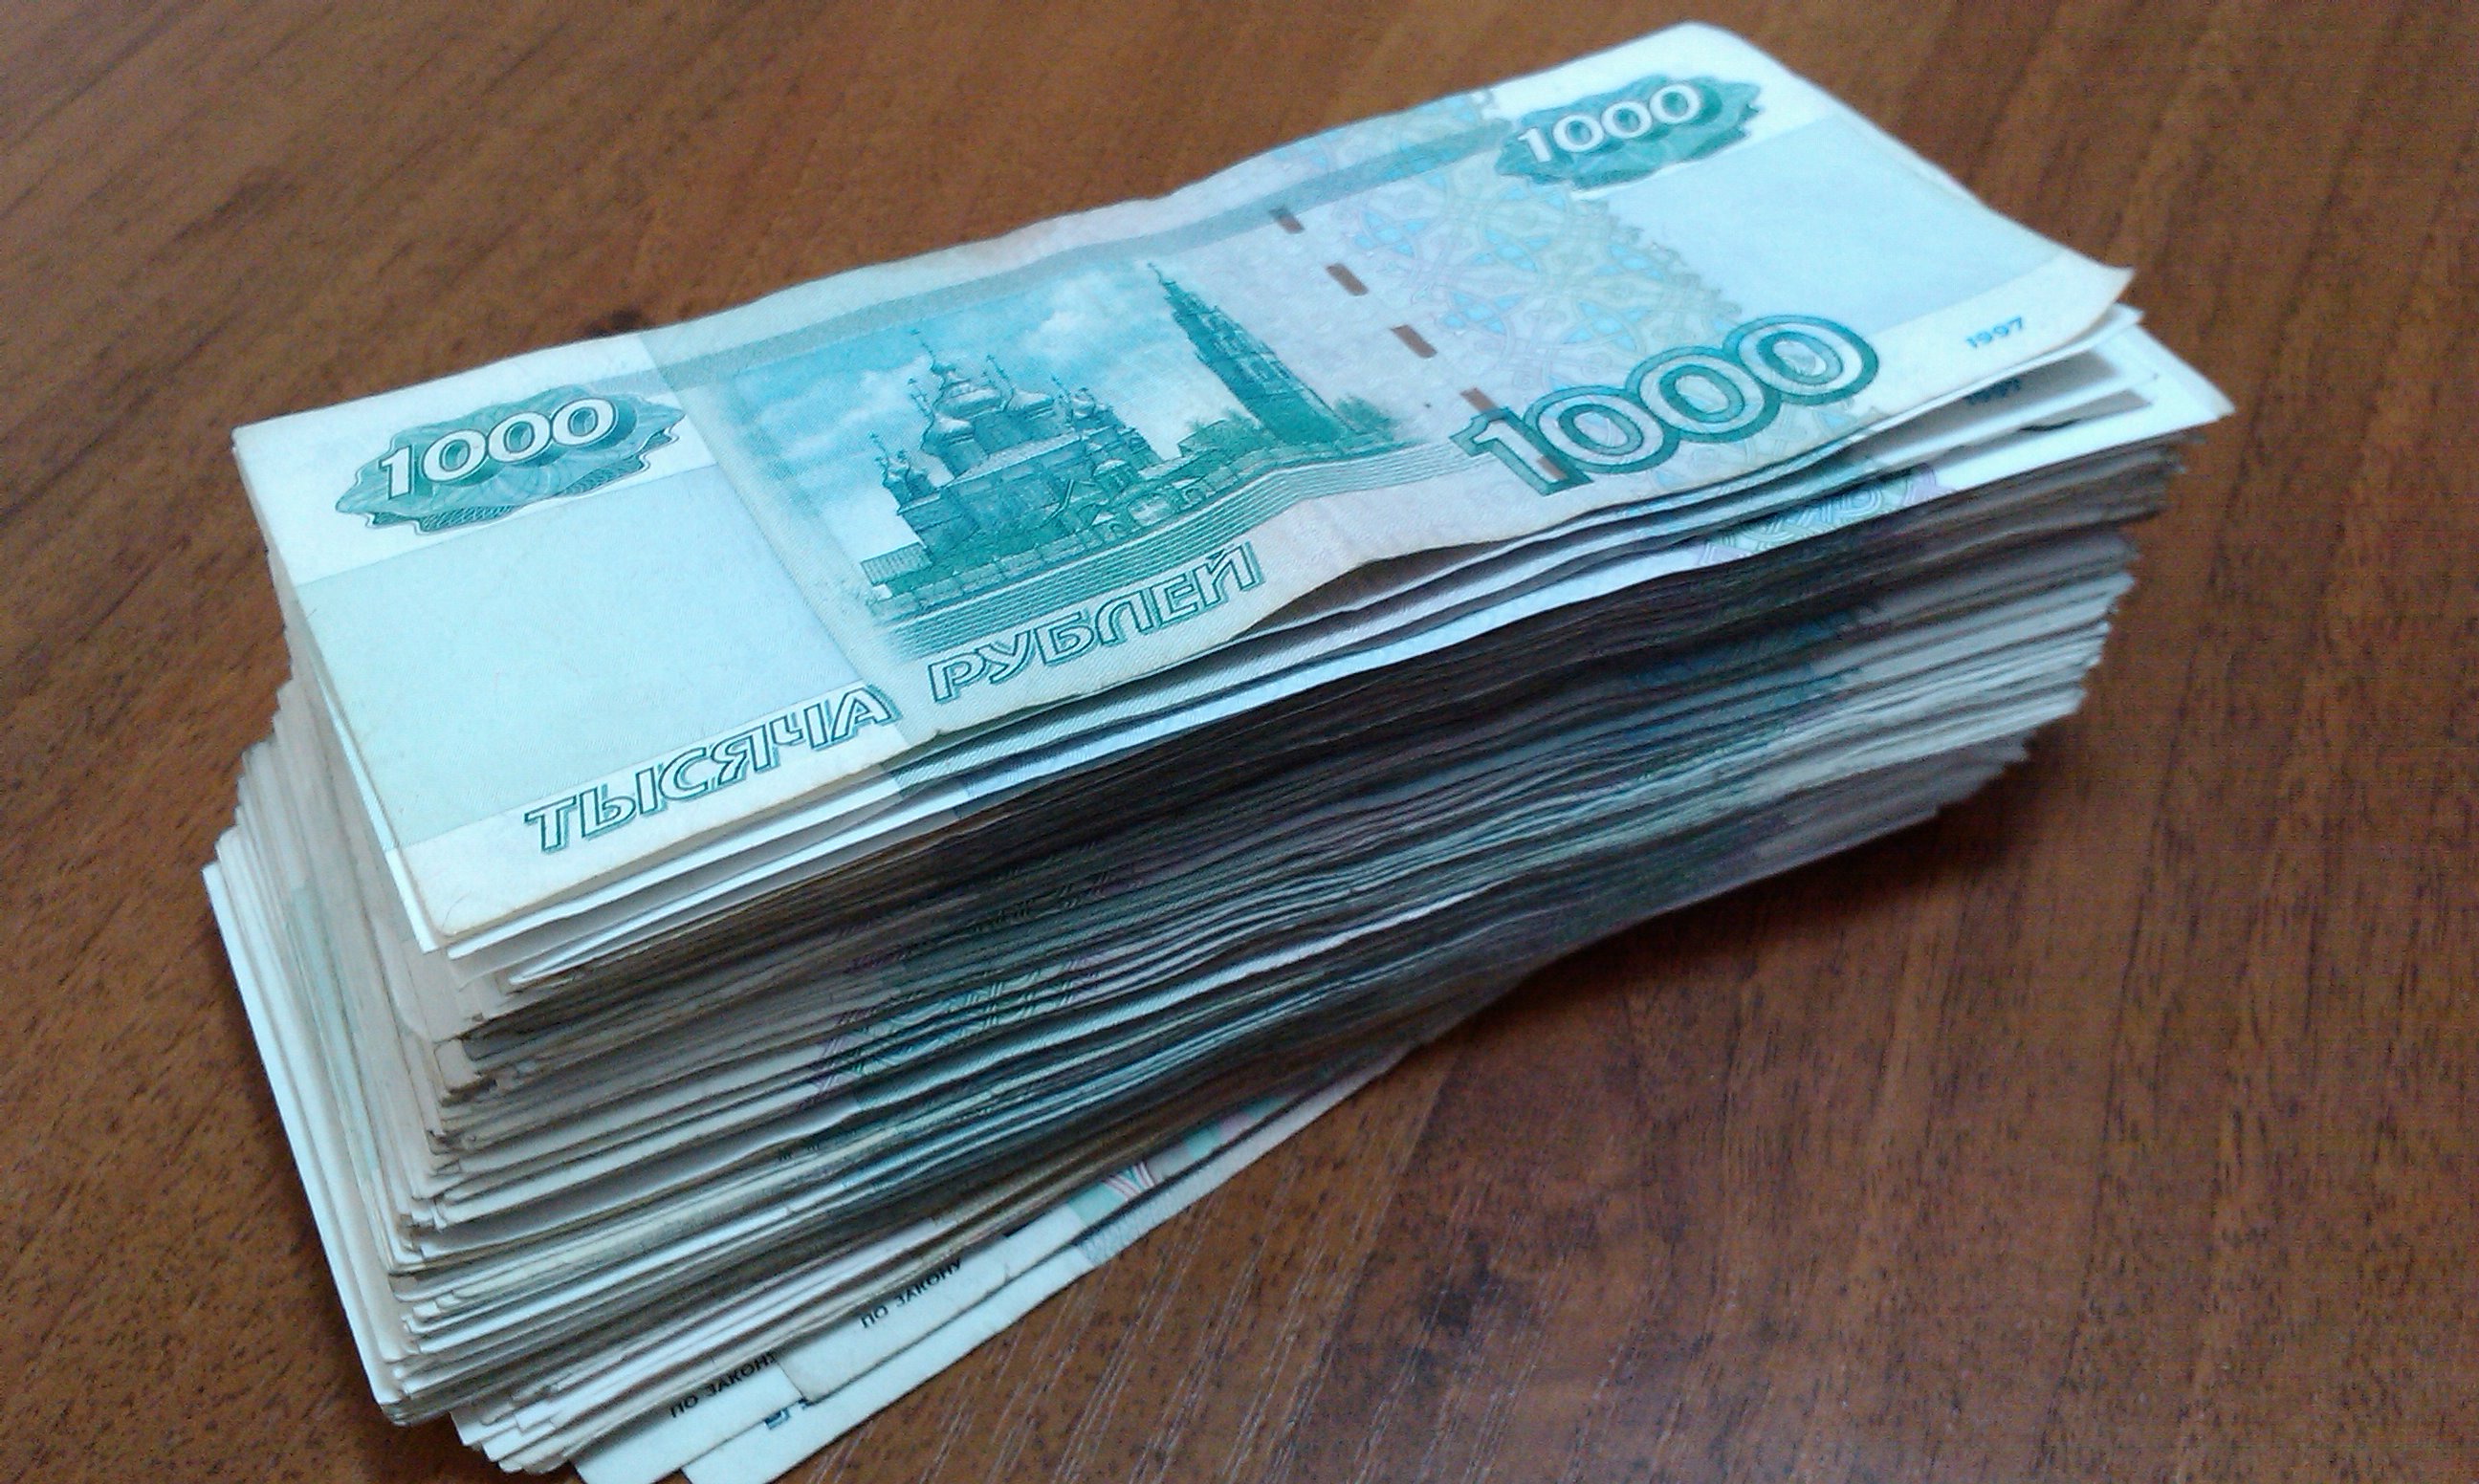 Индивидуалки За Полторы 1000 Рублей